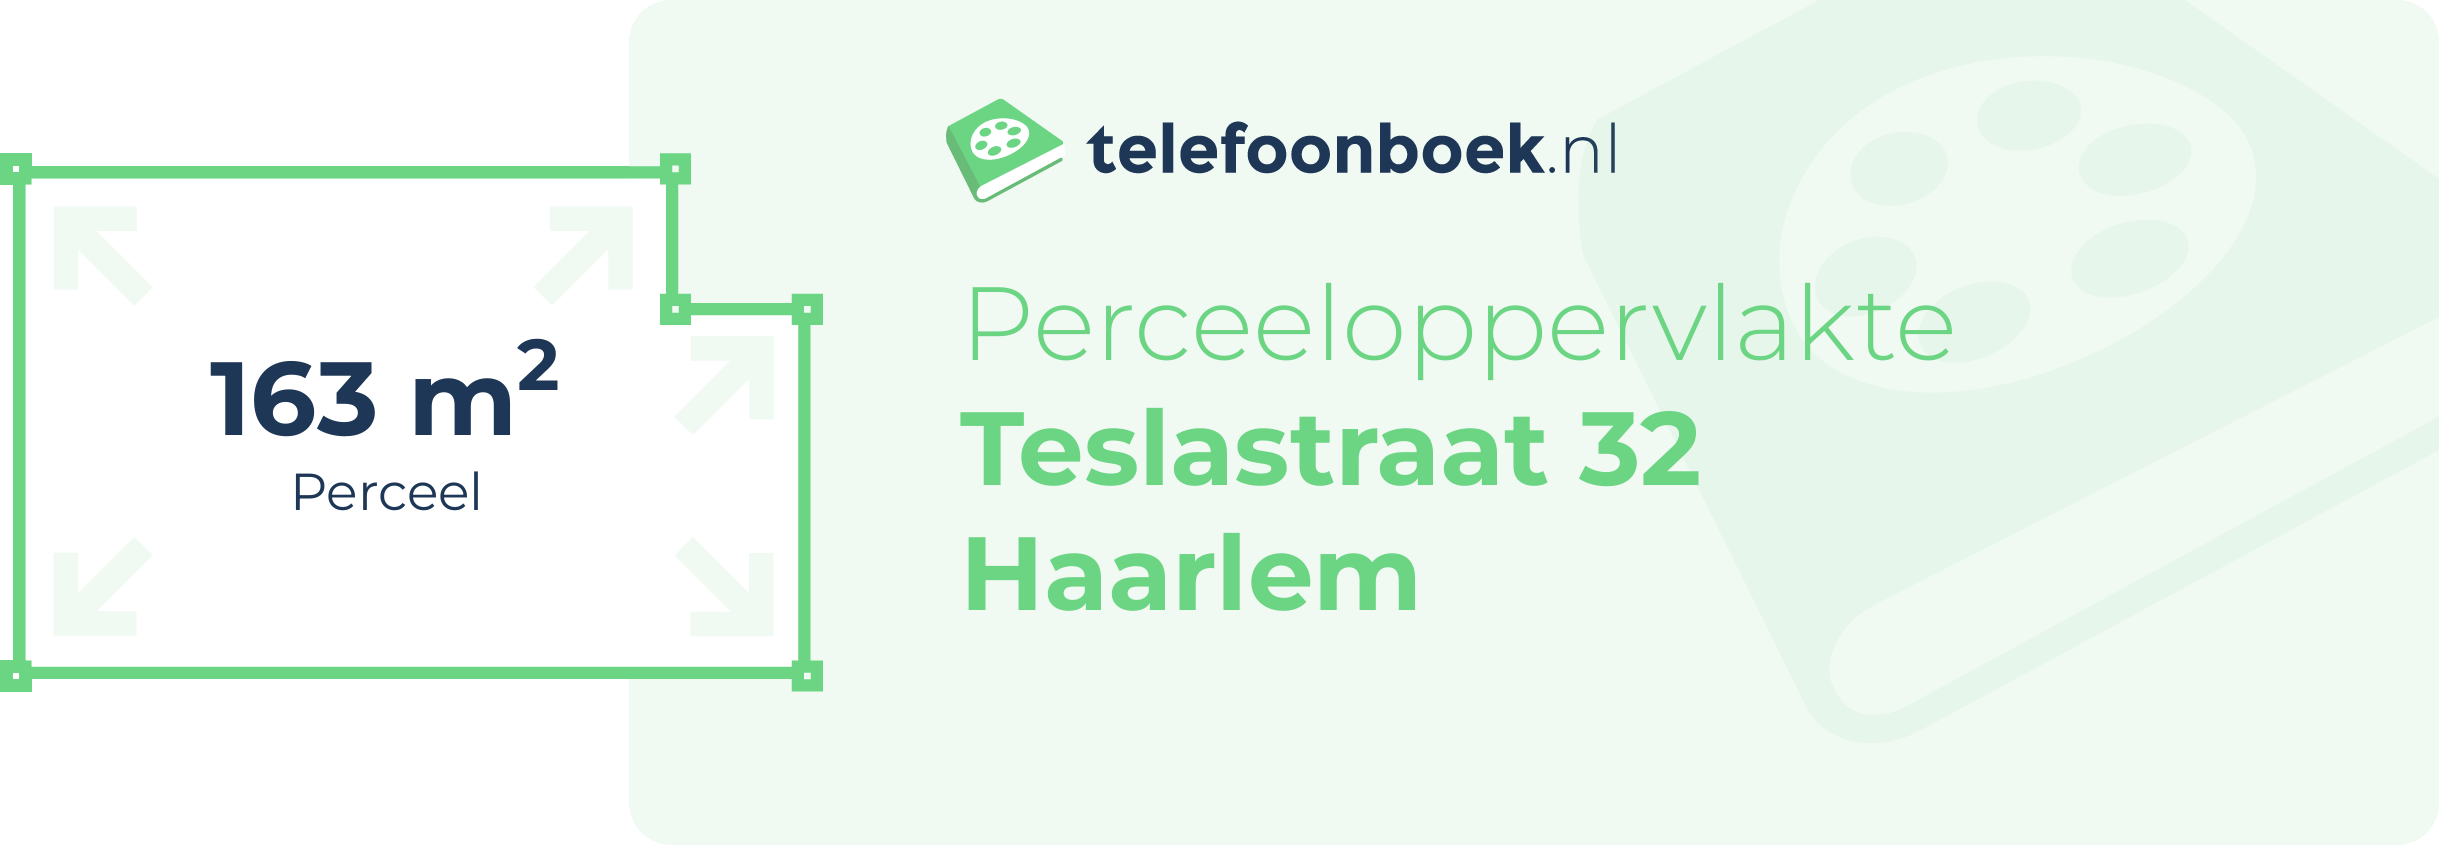 Perceeloppervlakte Teslastraat 32 Haarlem